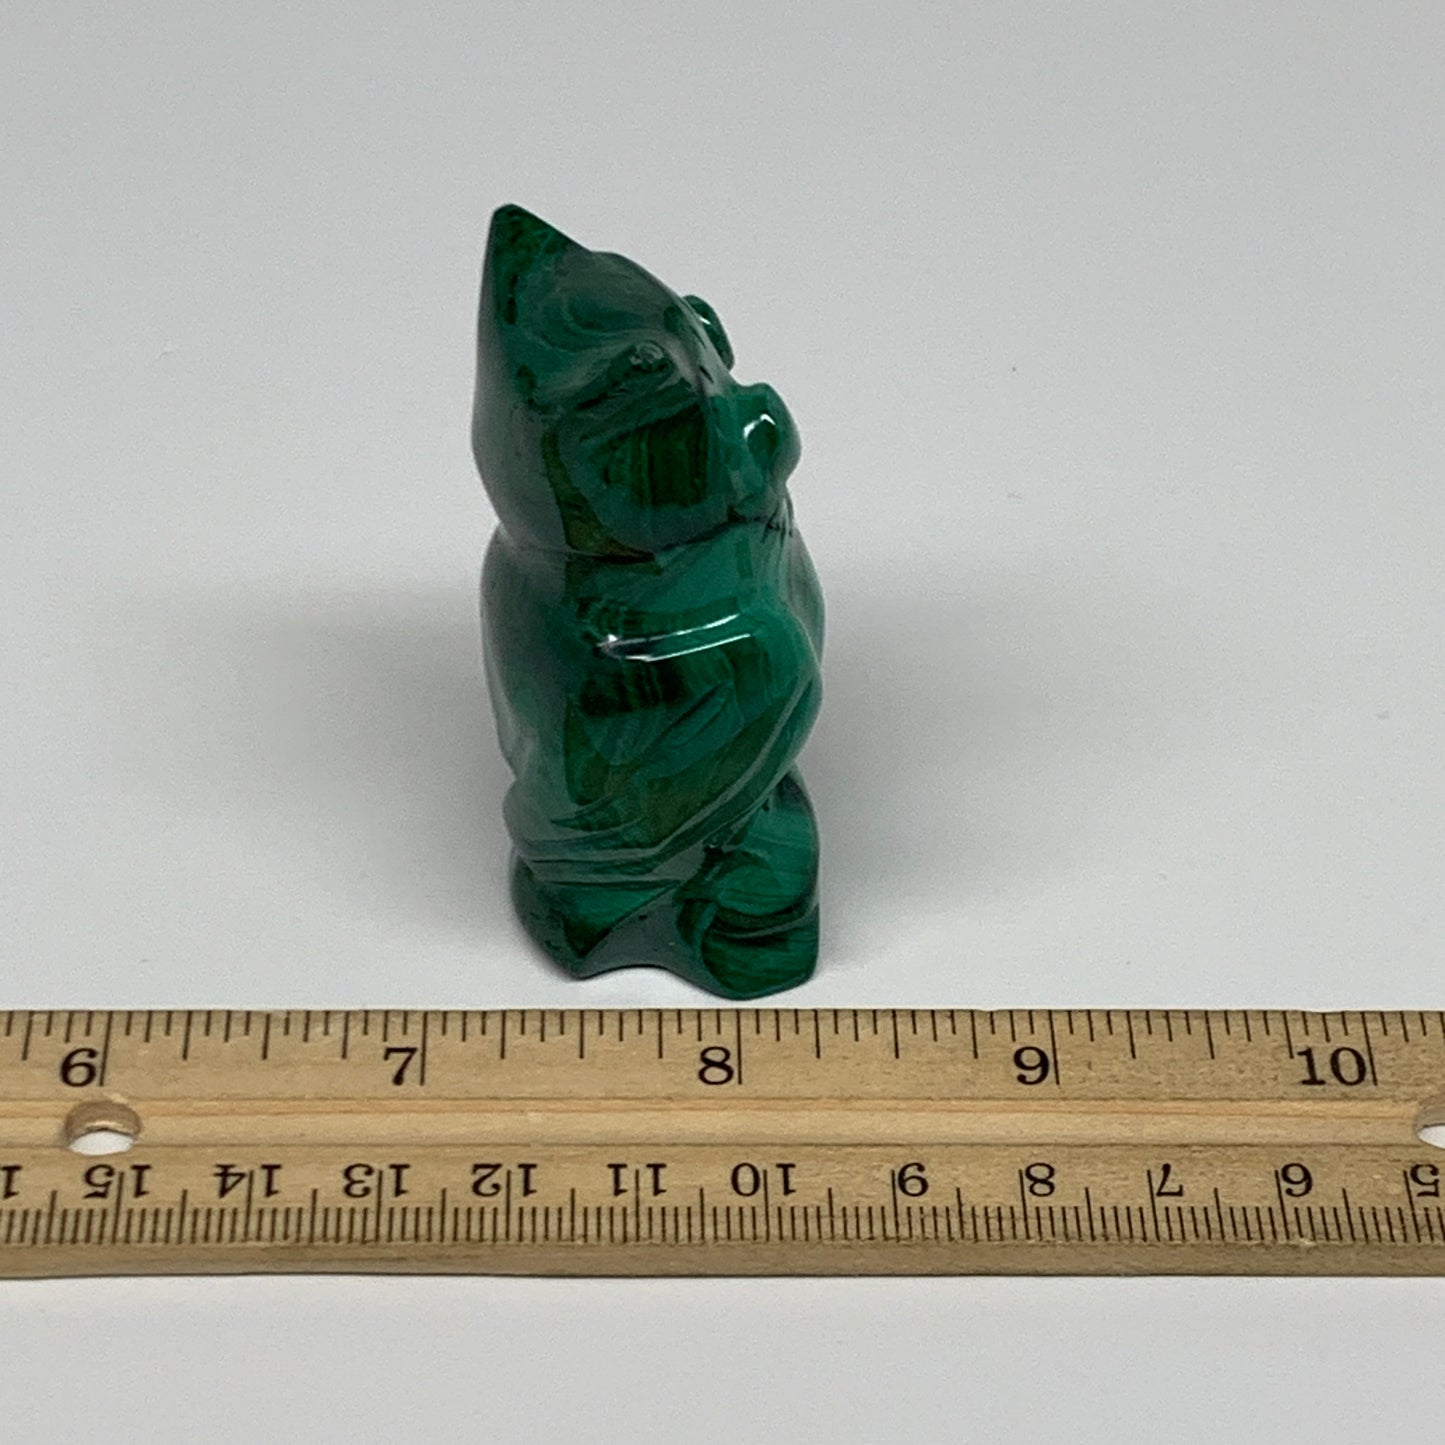 118.6g, 2.5"x1.4"x1.1" Natural Solid Malachite Penguin Figurine @Congo, B32753